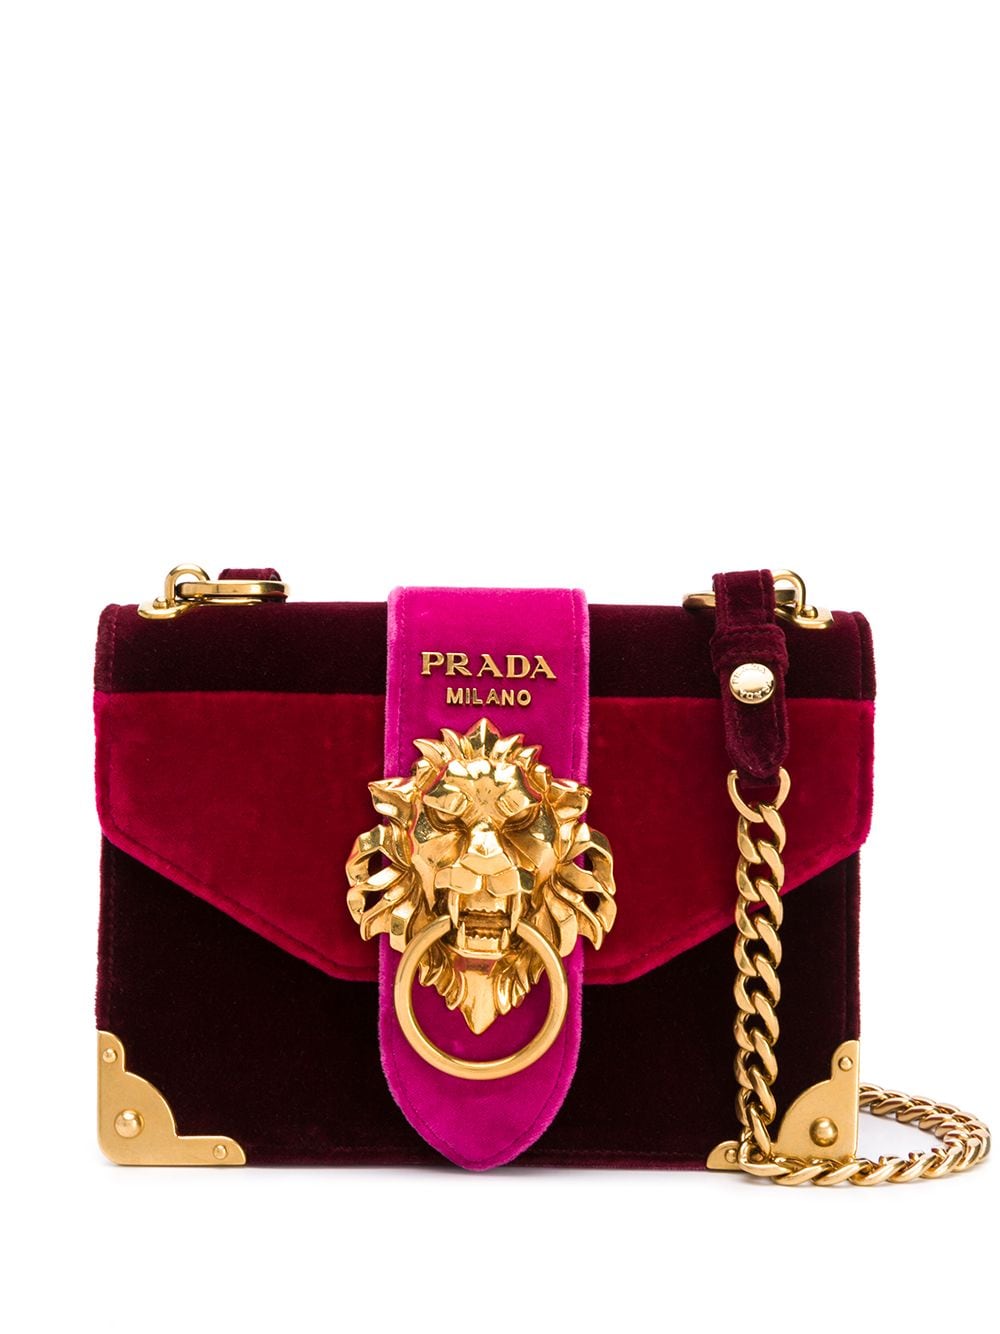 prada lion cahier bag